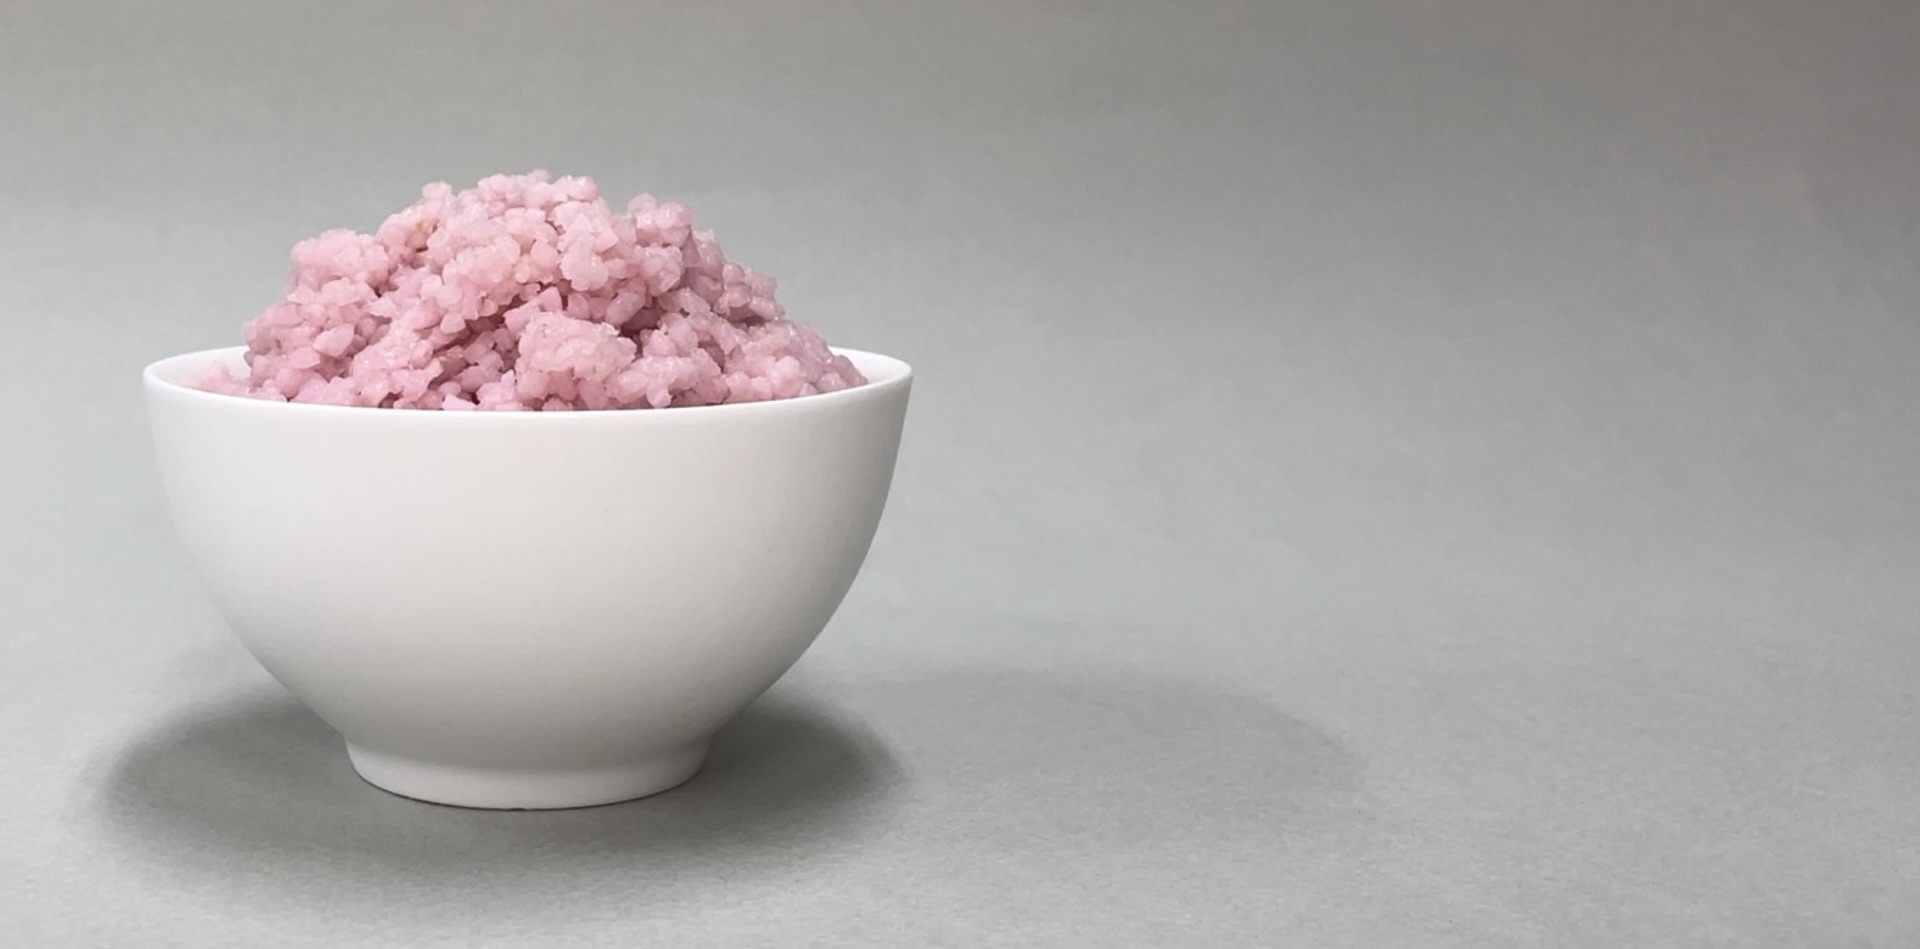 Olcsó és fenntartható fehérjeforrást fejlesztettek rizsből és marhahús-őssejtekből